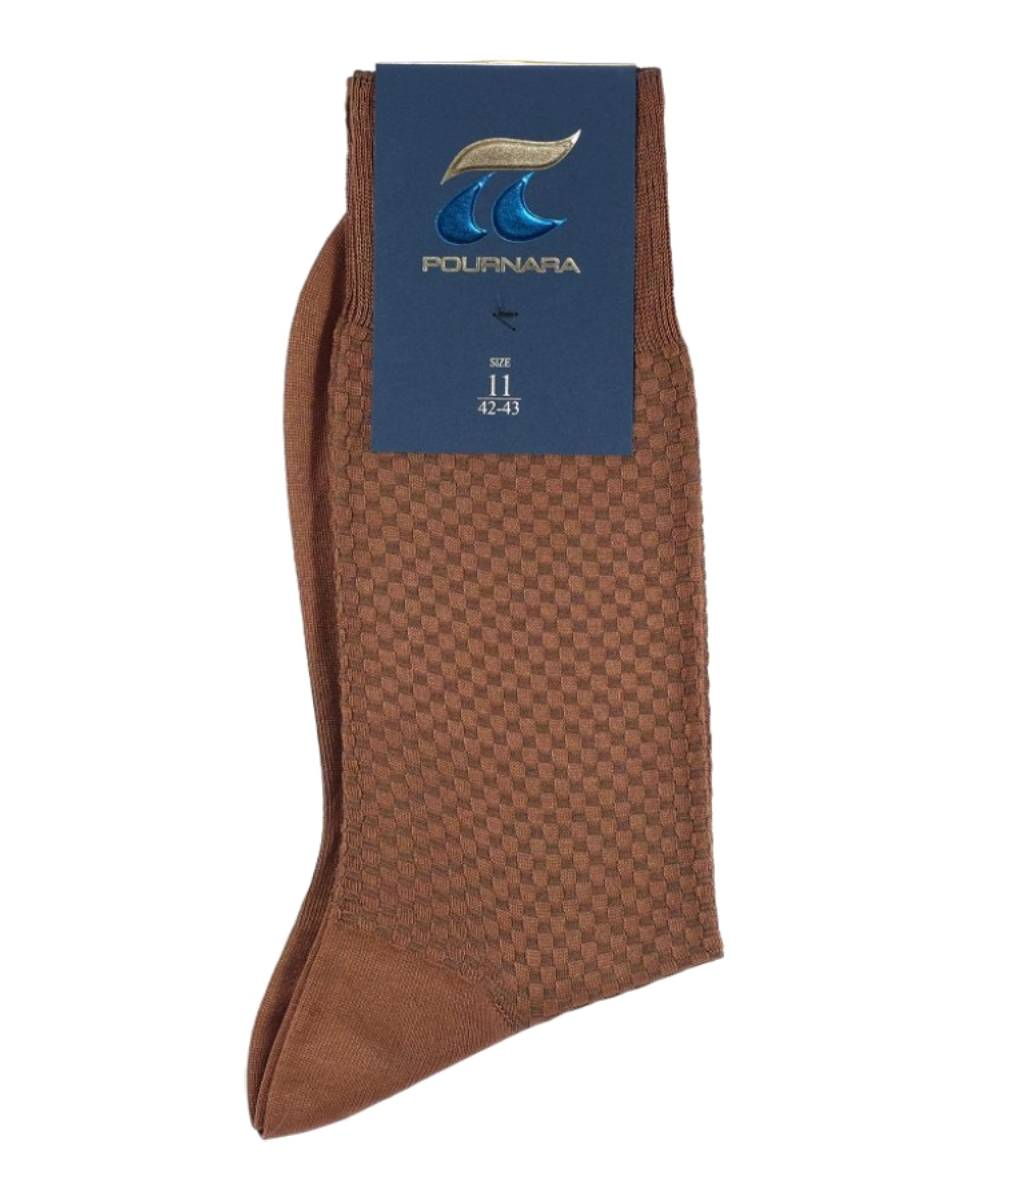 Ανδρική βαμβακερή κάλτσα πικέ Πουρνάρας Ταμπά κωδ. 162 P162 Ταμπά